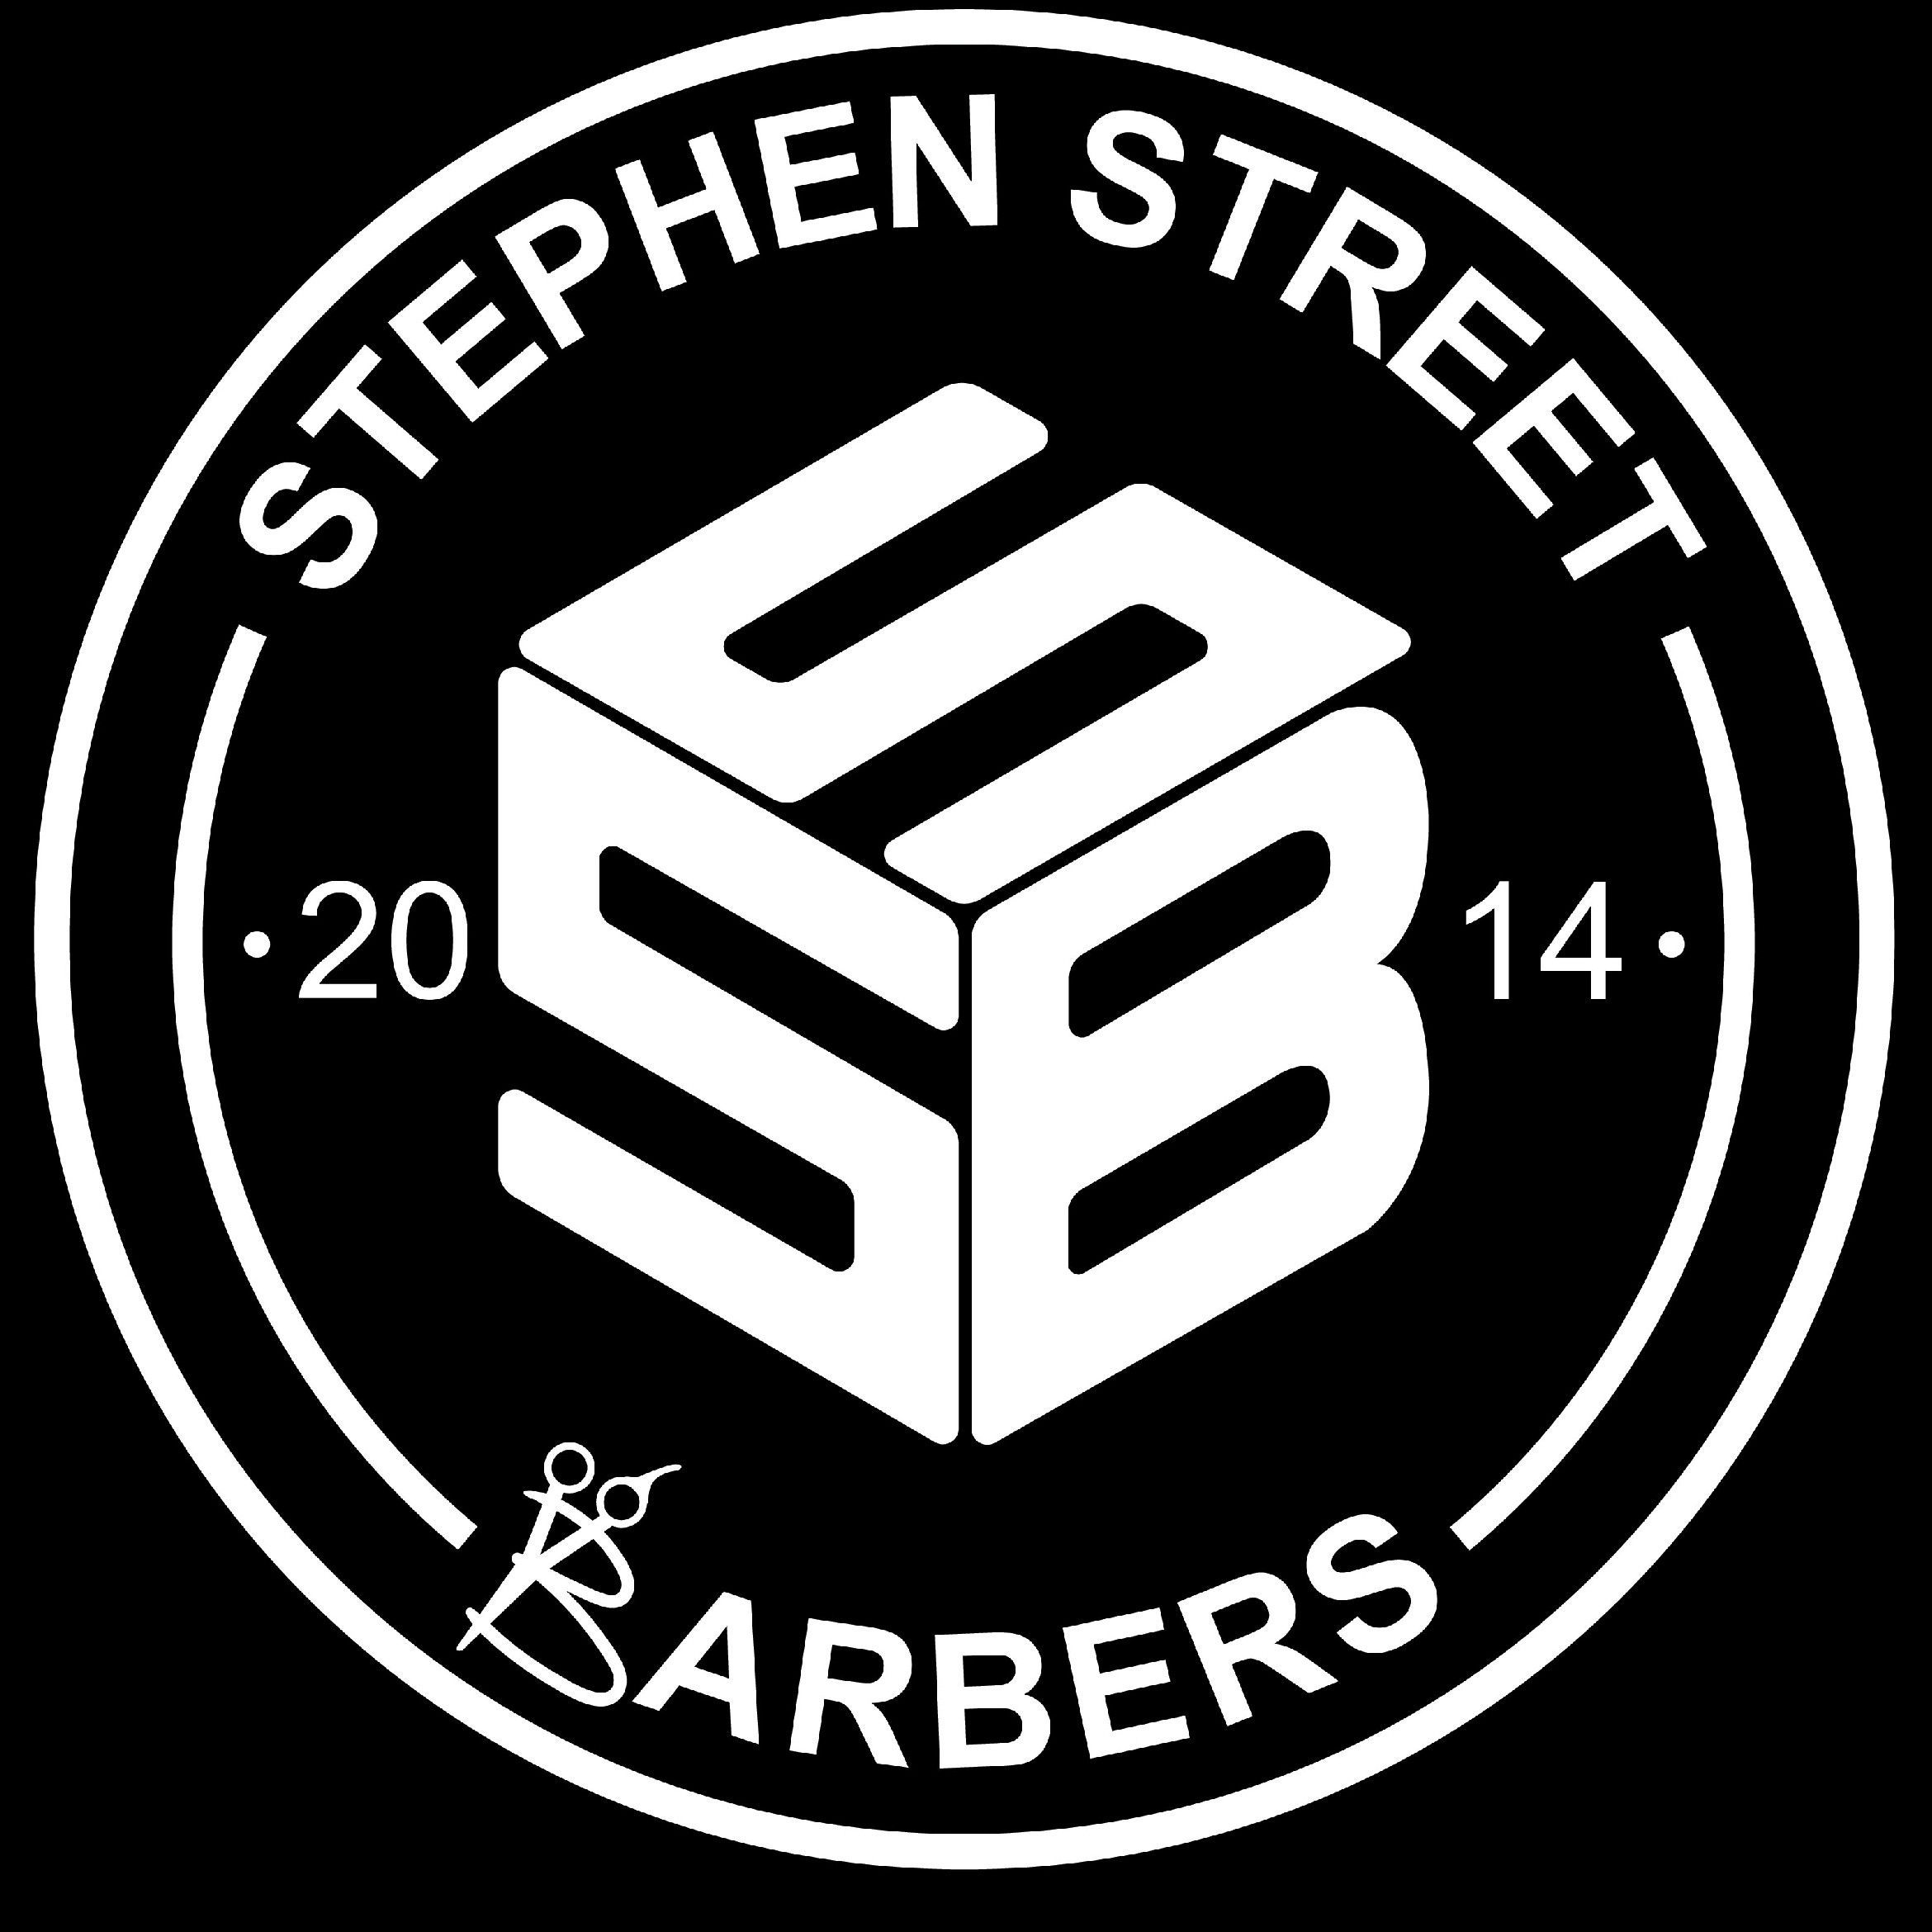 Danny Stephen Street Barbers, 34 Stephen Street, X91, Waterford